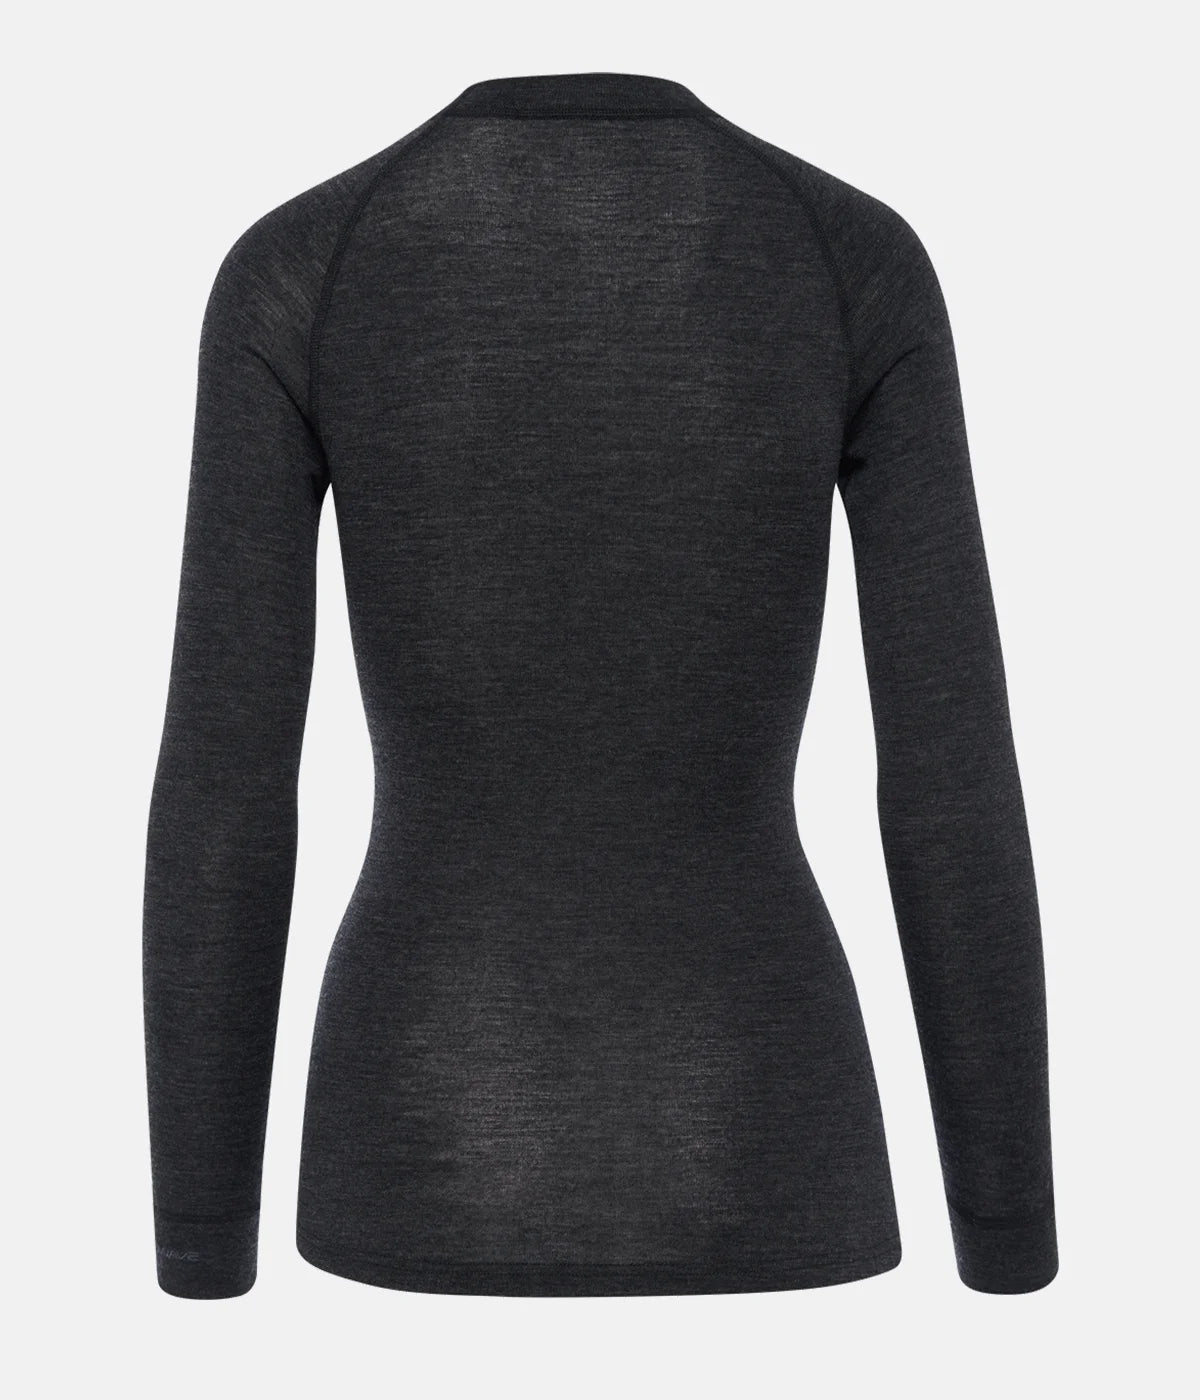 Sale: Women's Merino Warm Thermal LS Shirt